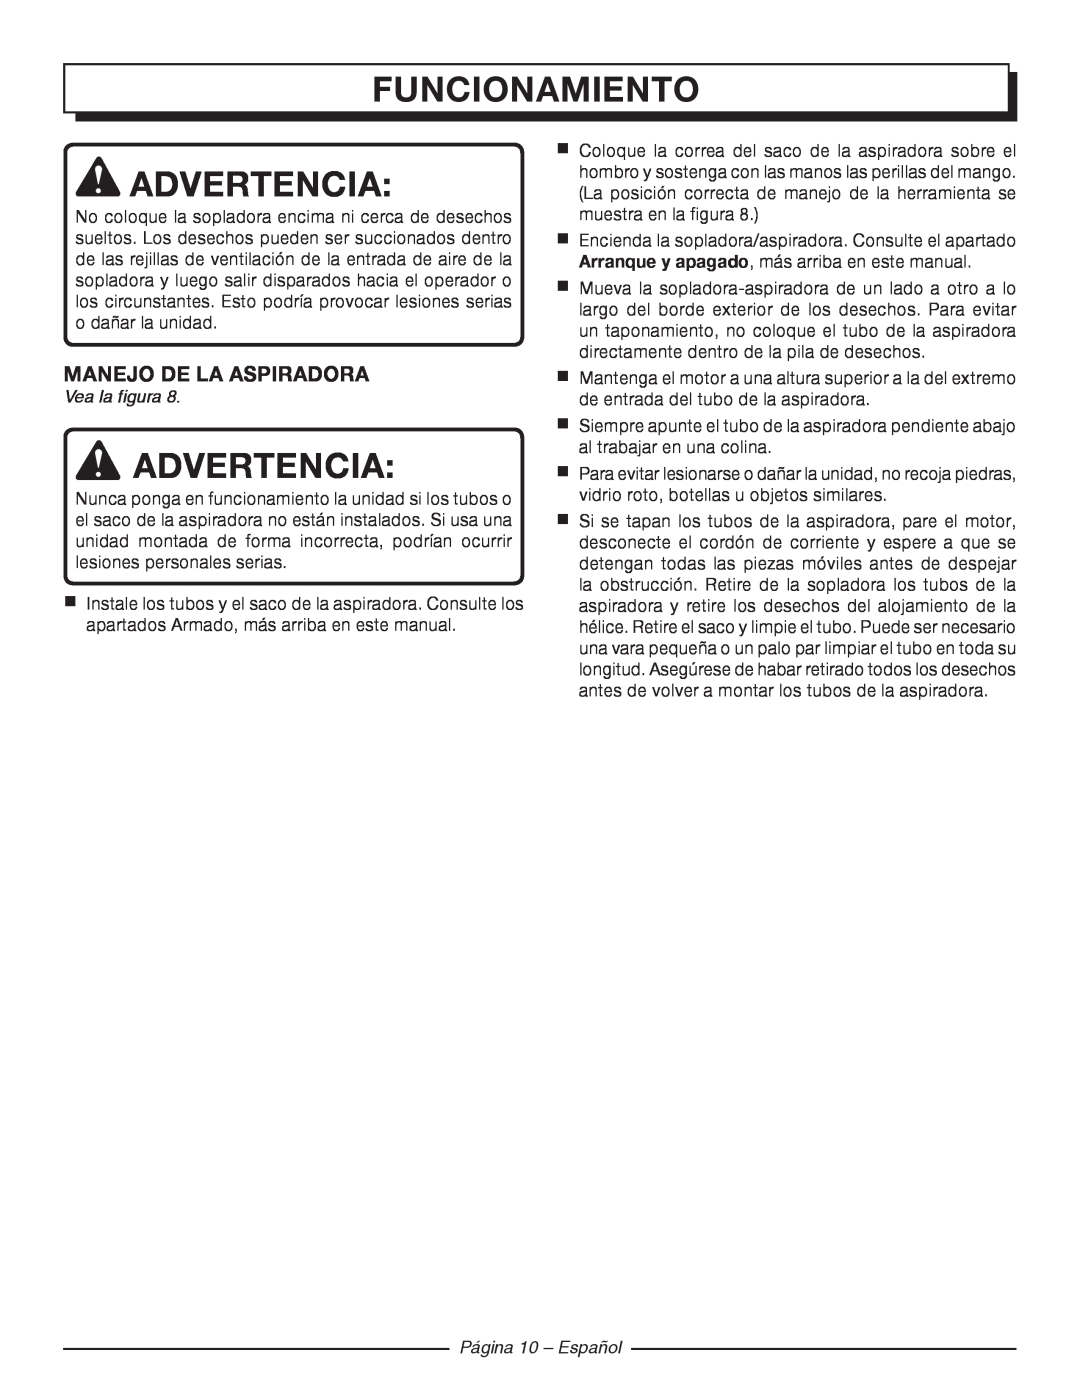 Homelite UT42120 Manejo De La Aspiradora, Página 10 - Español, Funcionamiento, Advertencia, Vea la figura 